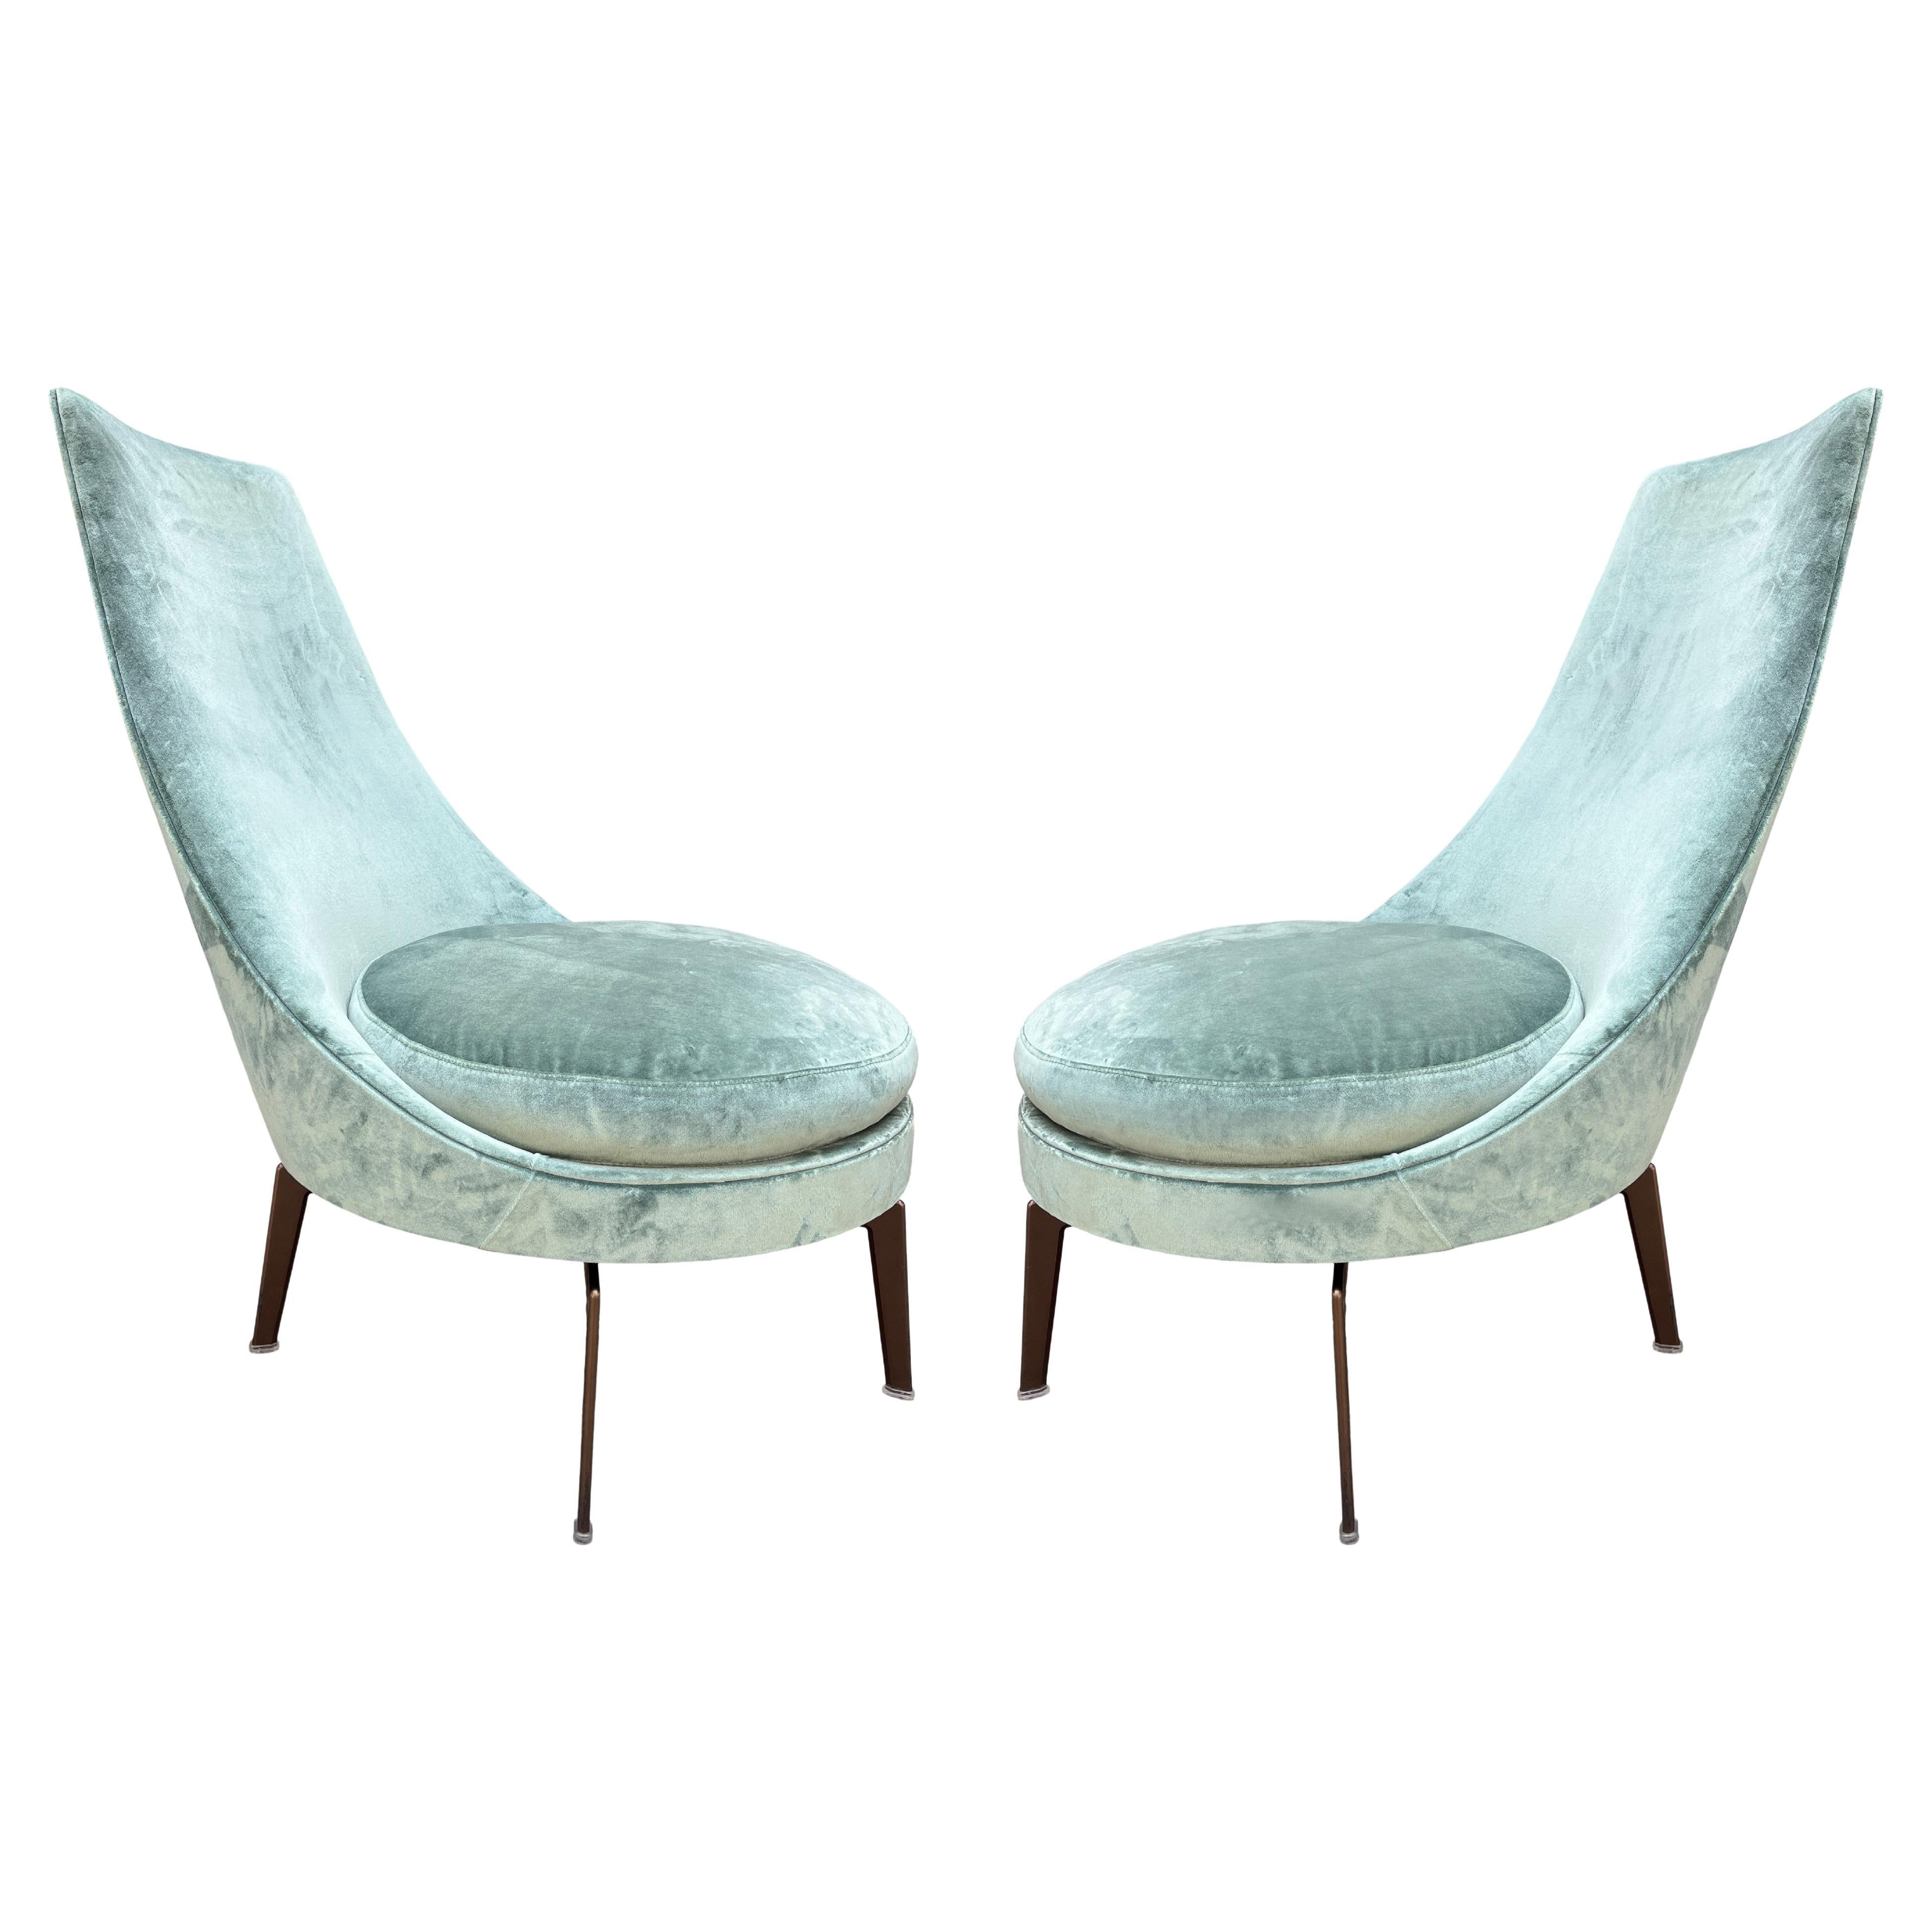 Superbe chaise longue post-moderne Guscioalto d'Antonio Citterio pour Flexform. Le revêtement en velours mousse de mer ajoute une touche de luxe et d'élégance à tout espace, tandis que le rembourrage en peluche assure un confort maximal pendant les